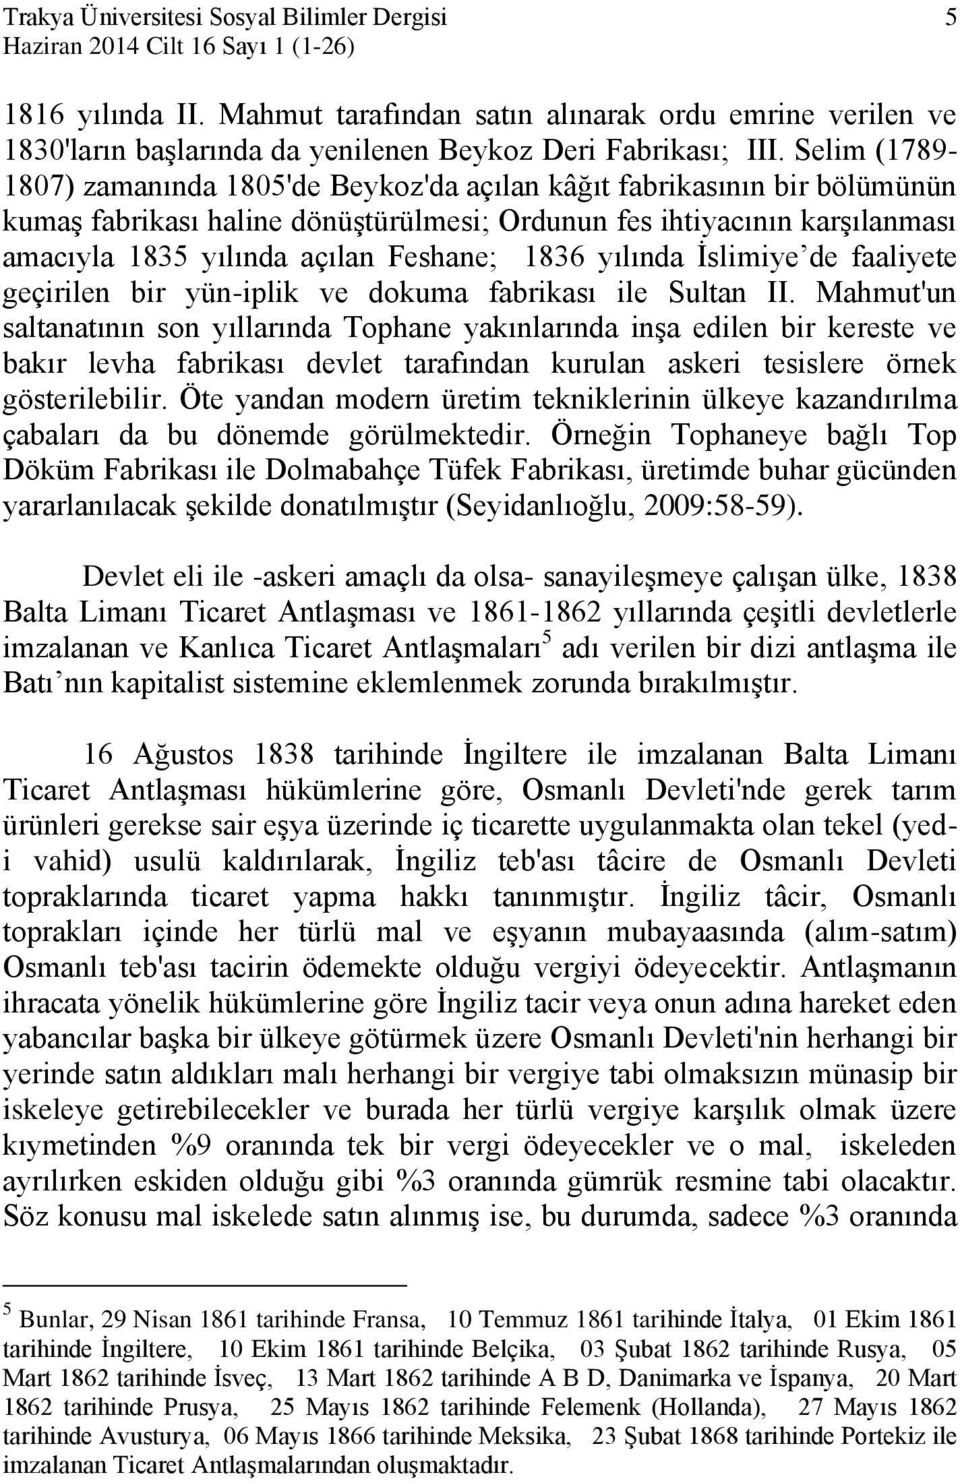 Selim (1789-1807) zamanında 1805'de Beykoz'da açılan kâğıt fabrikasının bir bölümünün kumaş fabrikası haline dönüştürülmesi; Ordunun fes ihtiyacının karşılanması amacıyla 1835 yılında açılan Feshane;